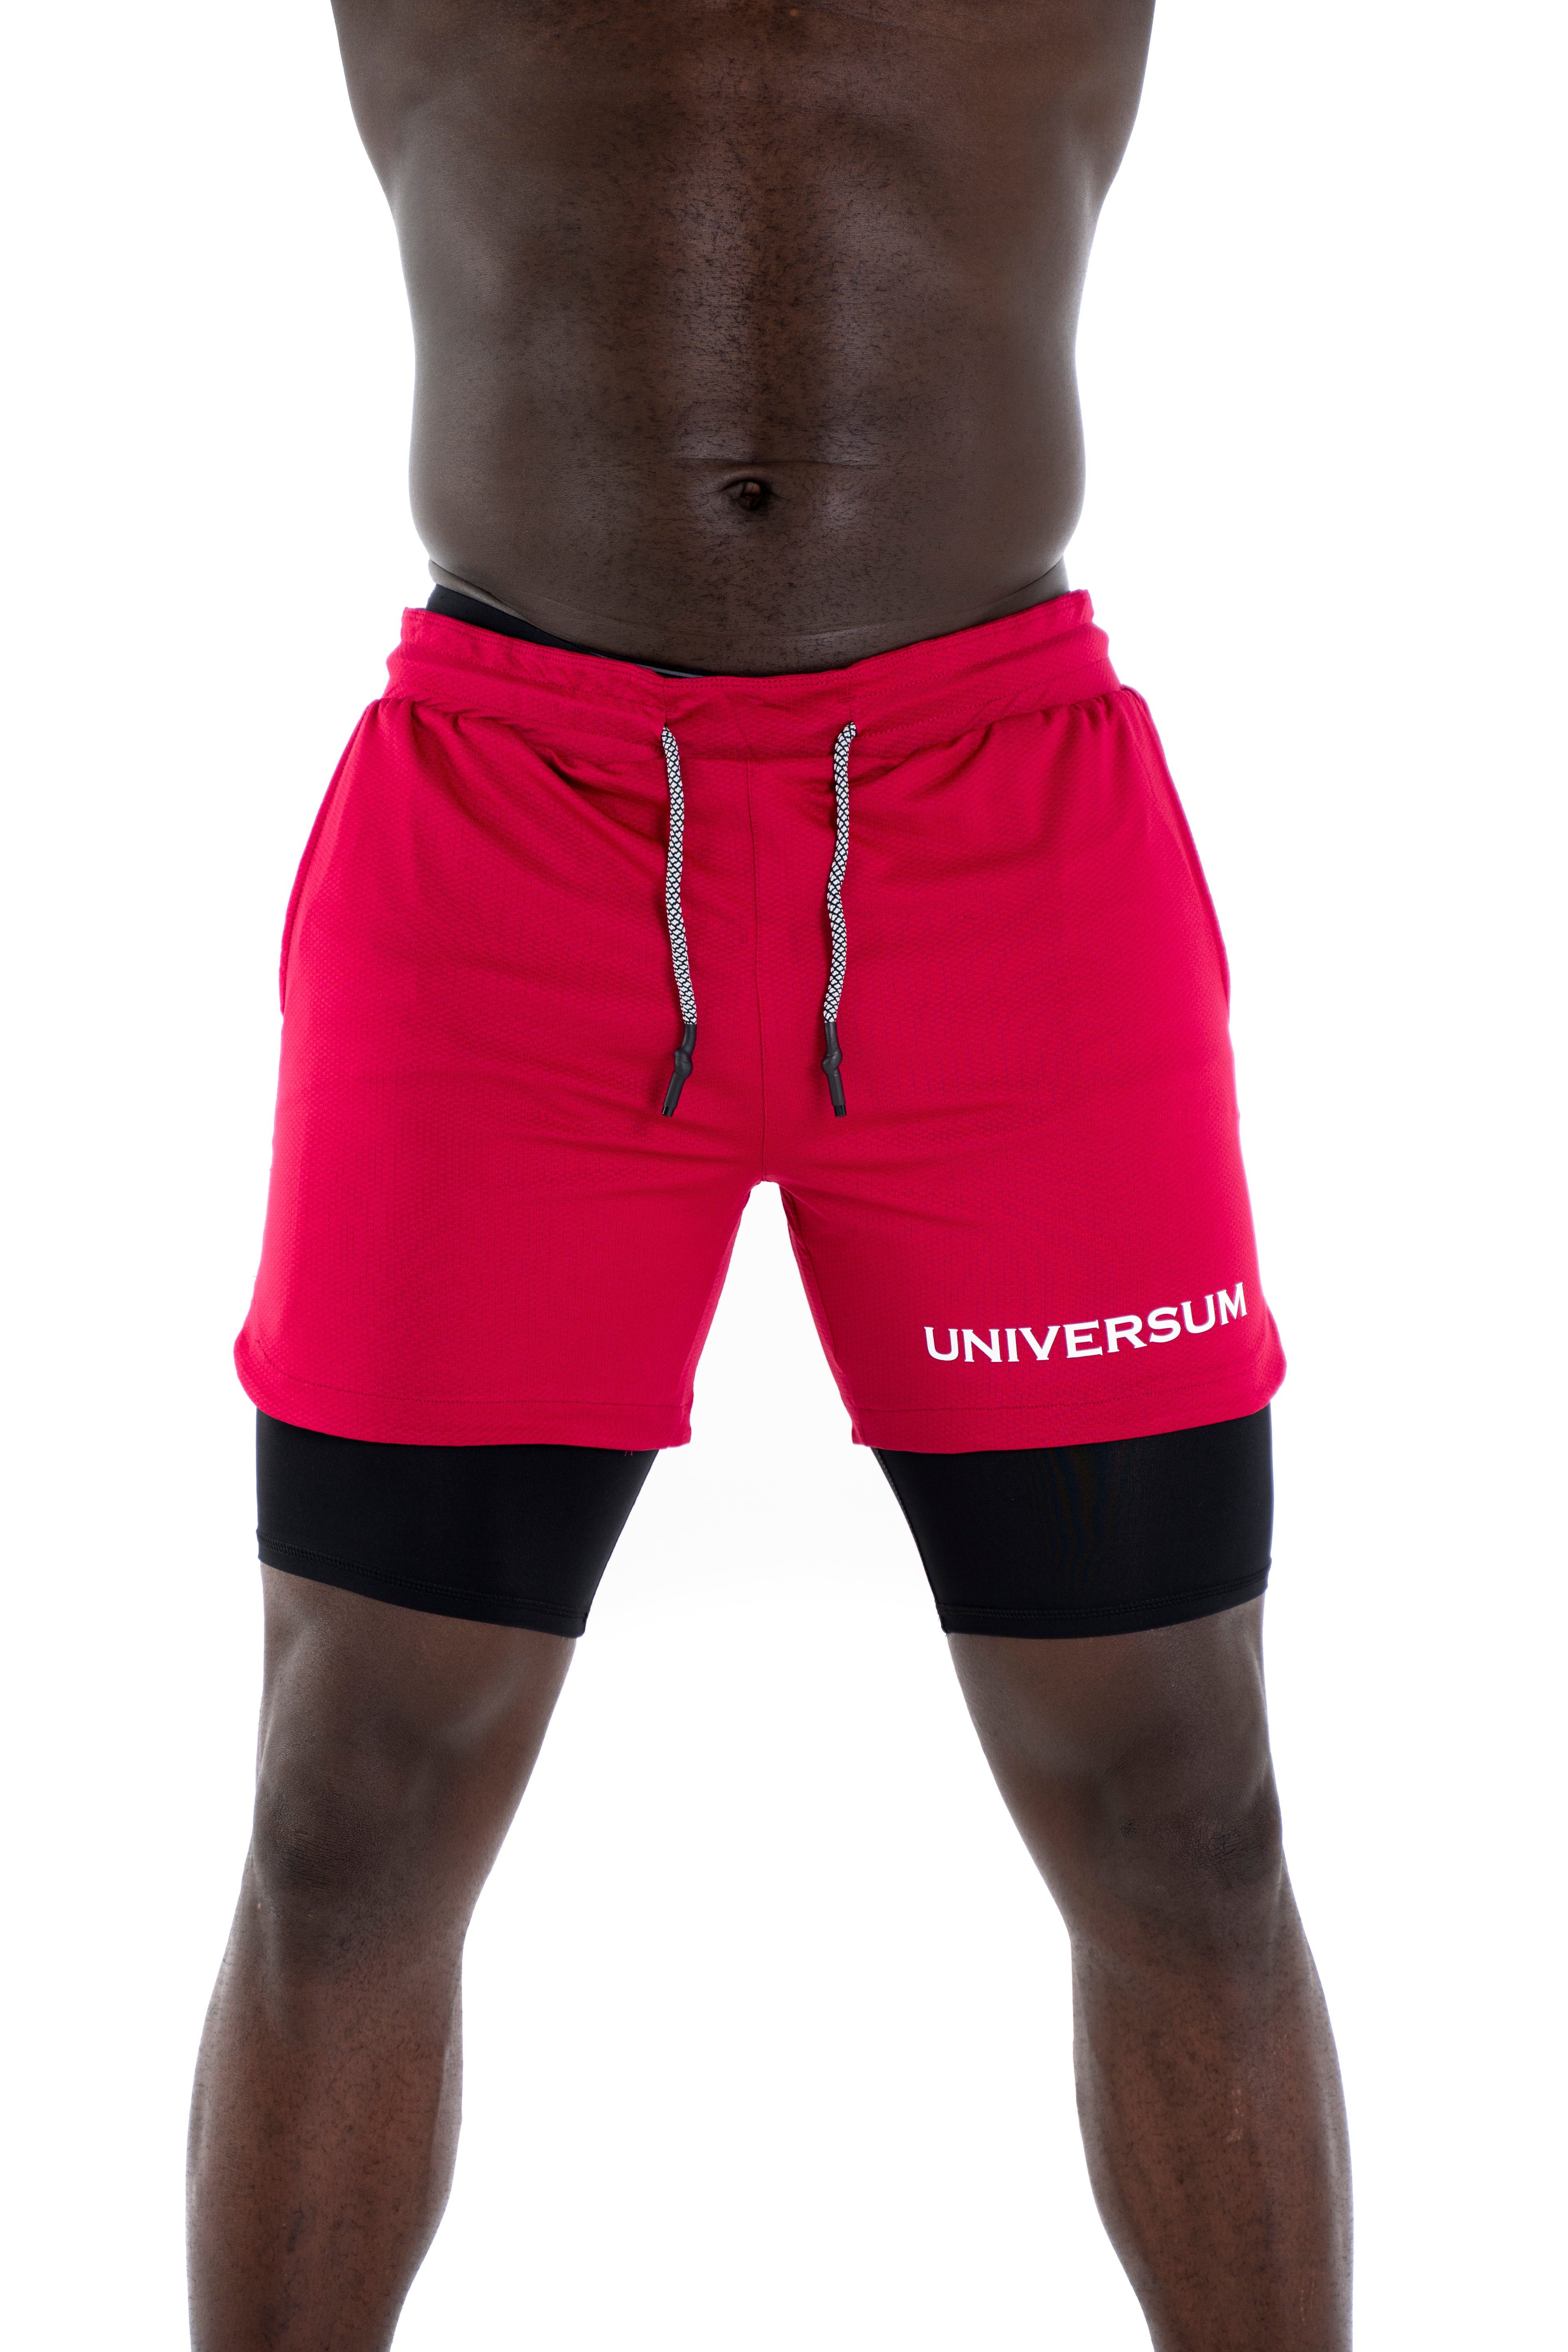 Universum Sportwear Sporthose Kurze Hose mit versteckter Handytasche Shorts mit funktioneller Unterziehhose rot